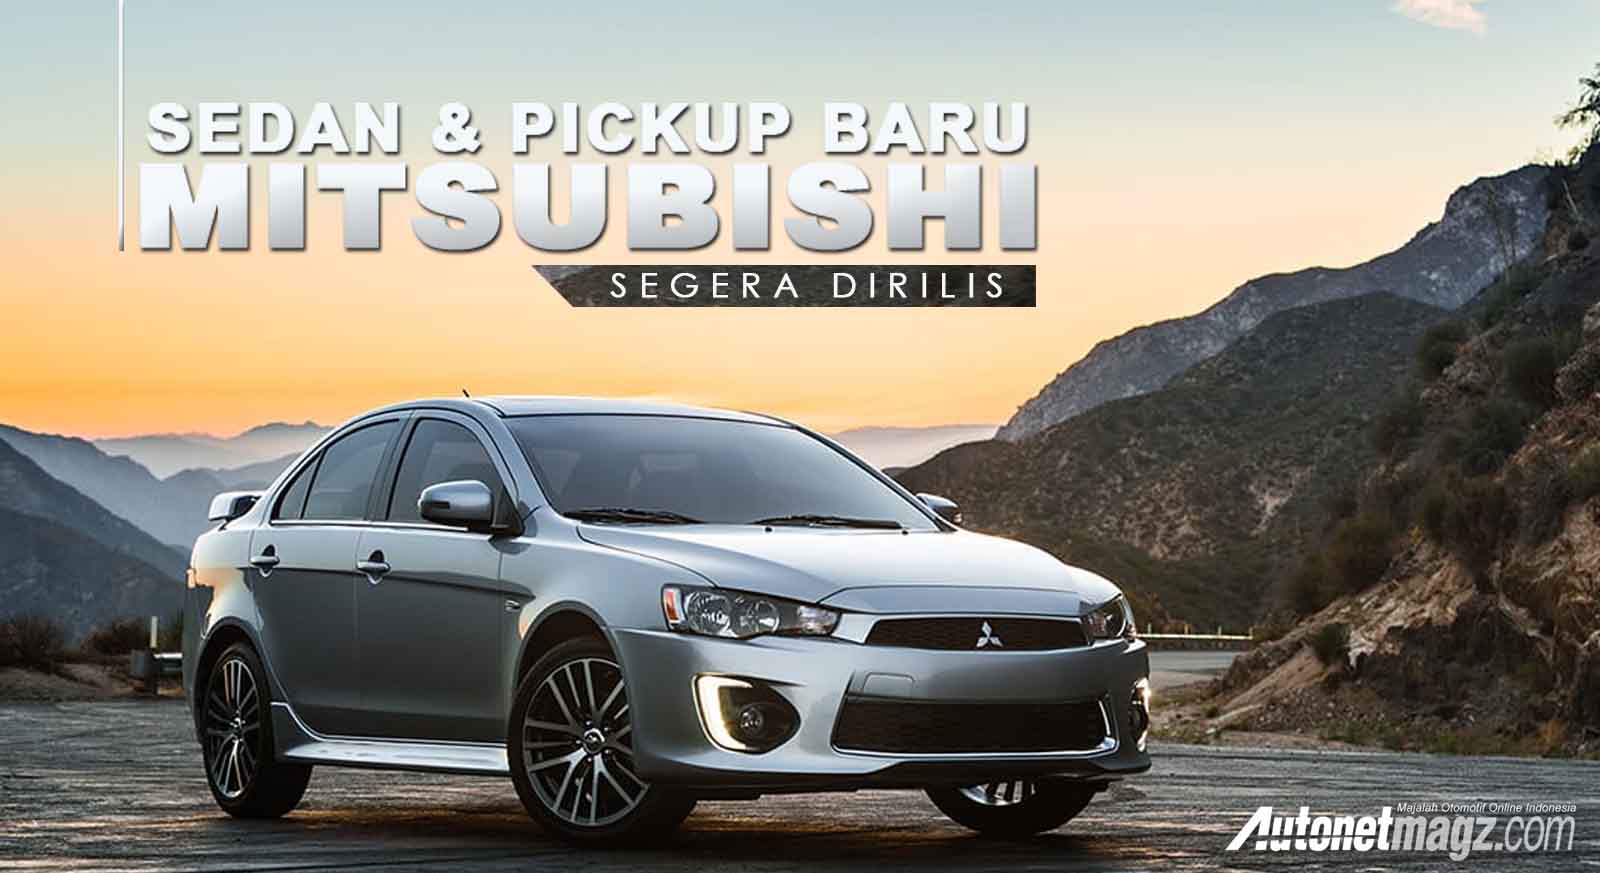 Berita, sedan dan pickup baru mitsubishi segera dirilis: Mitsubishi Akan Rilis Sedan dan Pickup Baru di Amerika